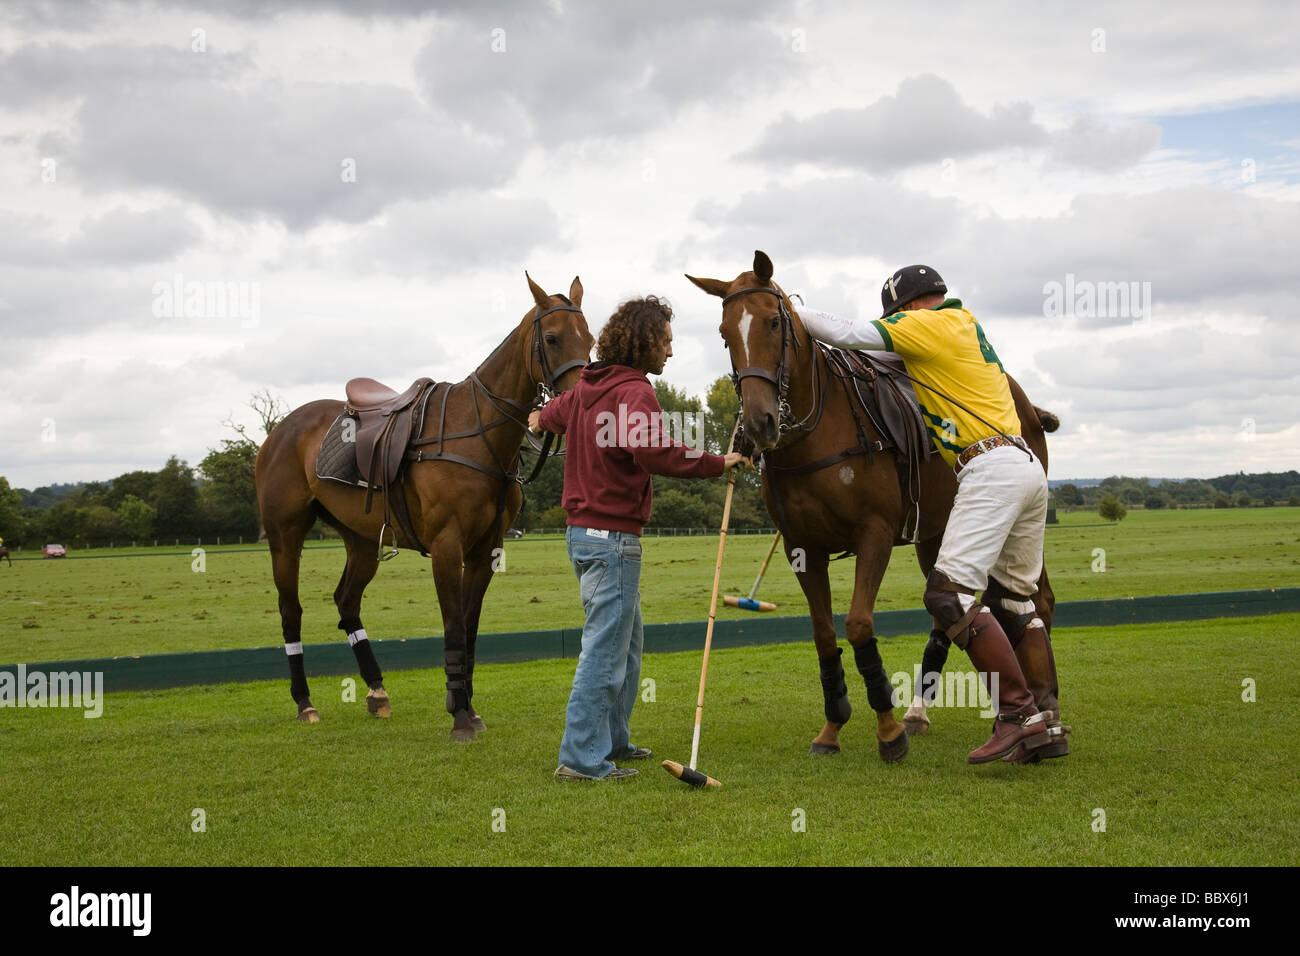 Un joueur de polo chevaux changements au milieu chukka Cowdray Park, West Sussex, Angleterre. Banque D'Images